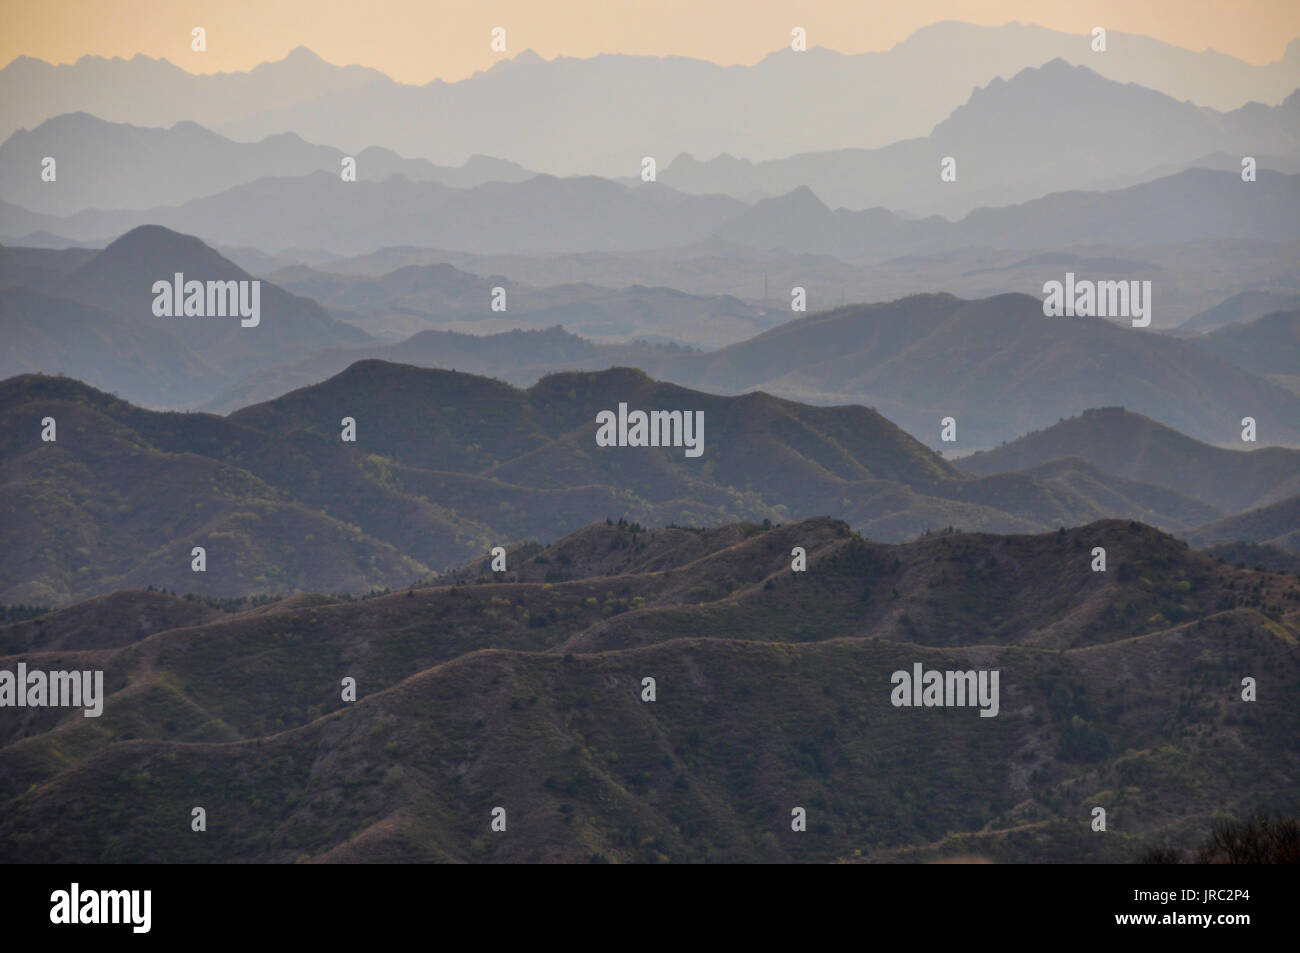 Misty Mountain reicht von der Chinesischen Mauer bei Jinshanling, Hebei gesehen. Stockfoto